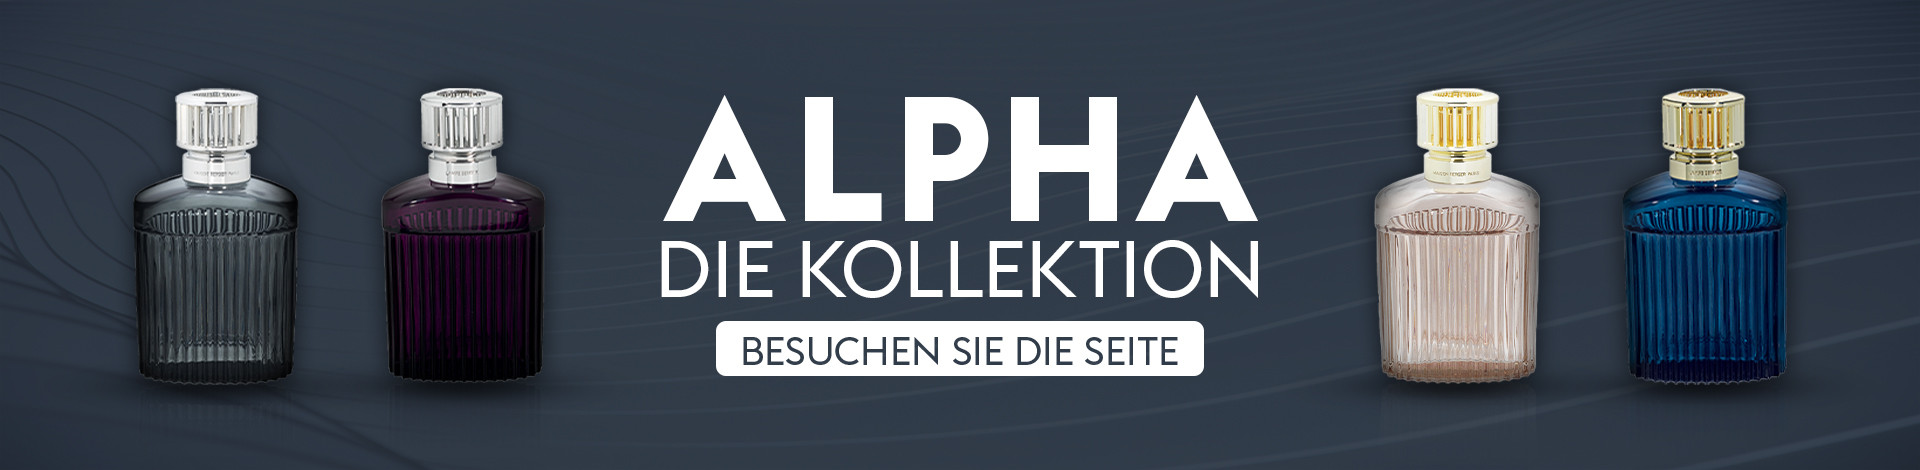 Alpha collection banner DE